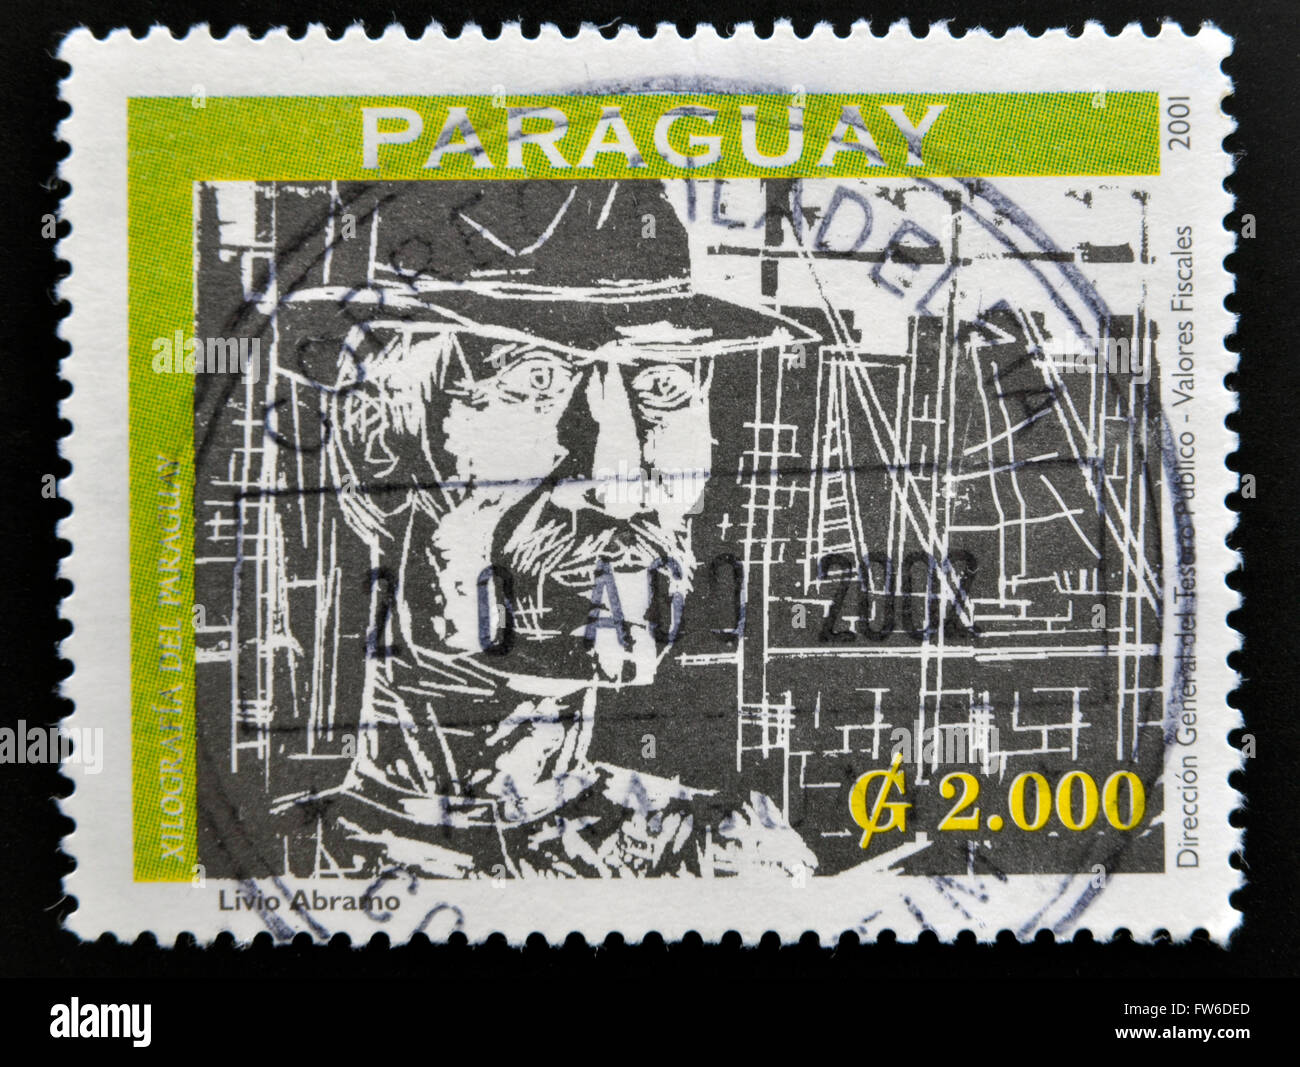 PARAGUAY - circa 2001 : timbres en Paraguay montre une gravure du Paraguay, Livio Abramo, vers 2001 Banque D'Images